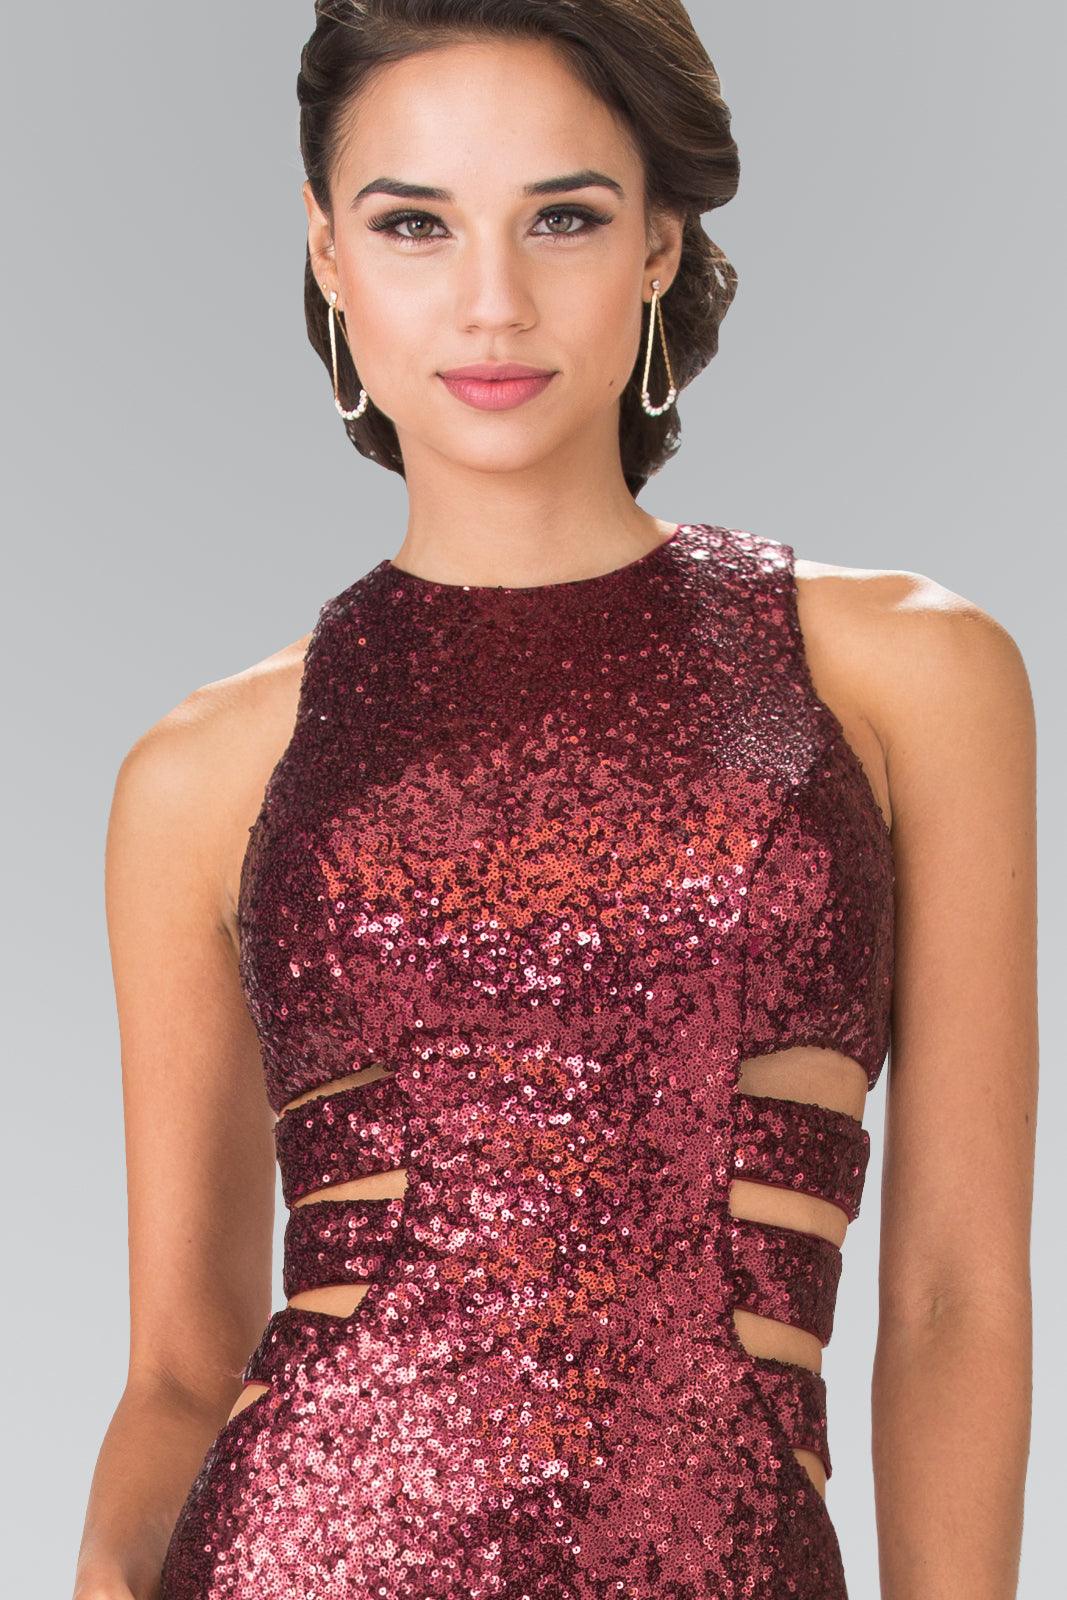 Prom Long Formal Dress Sequins Evening Gown - The Dress Outlet Elizabeth K